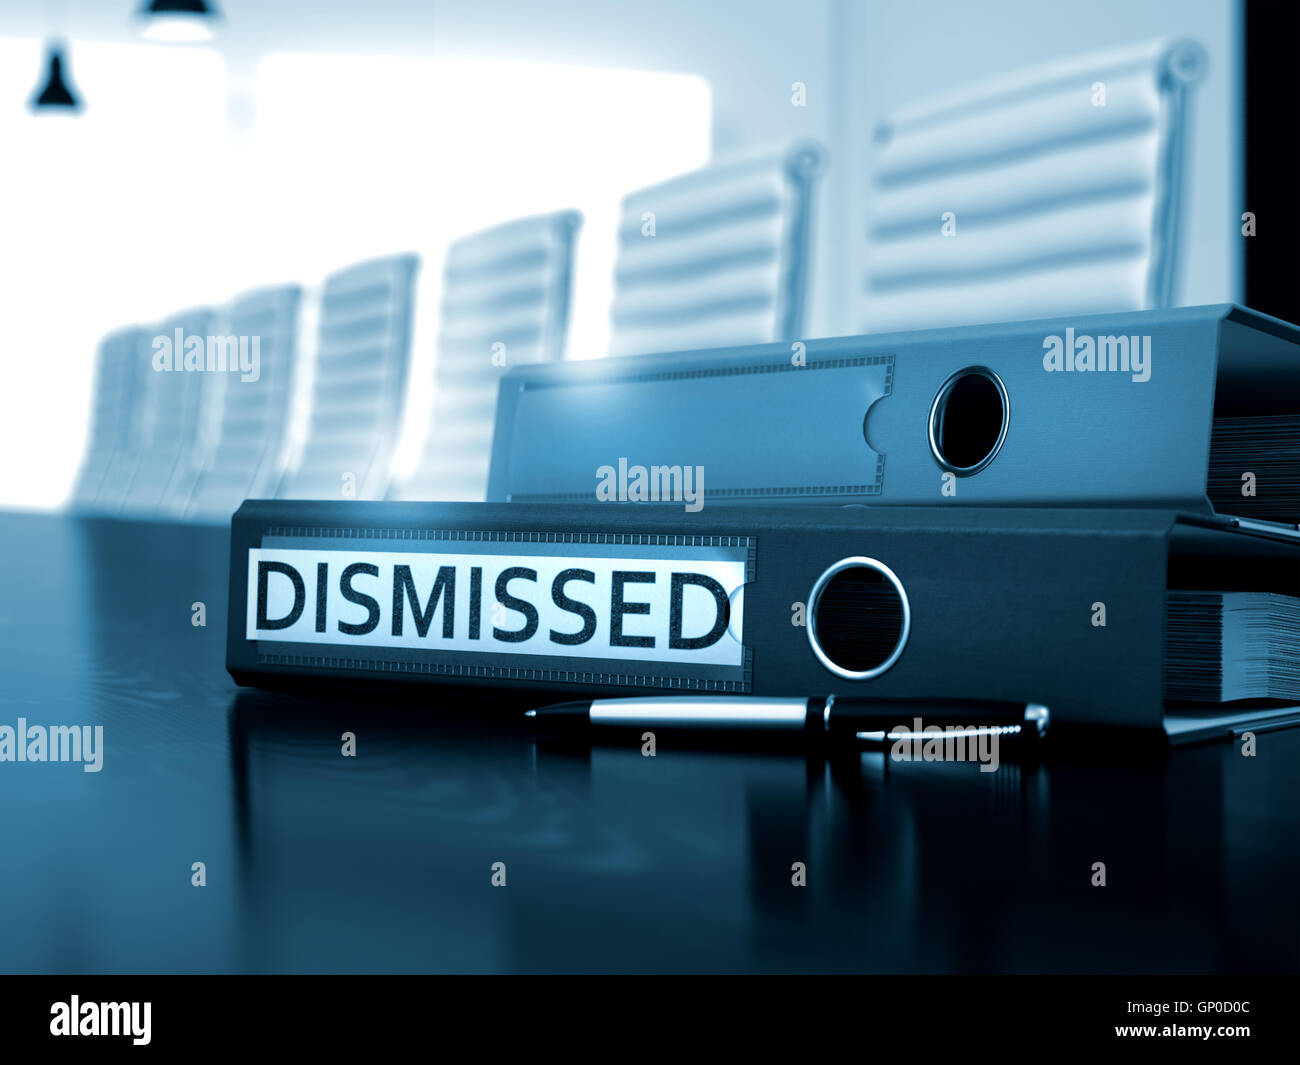 Dismissed - Folder on Working Black Desk. Dismissed. Illustration on Blurred Background. Office Folder with Inscription Dismisse Stock Photo